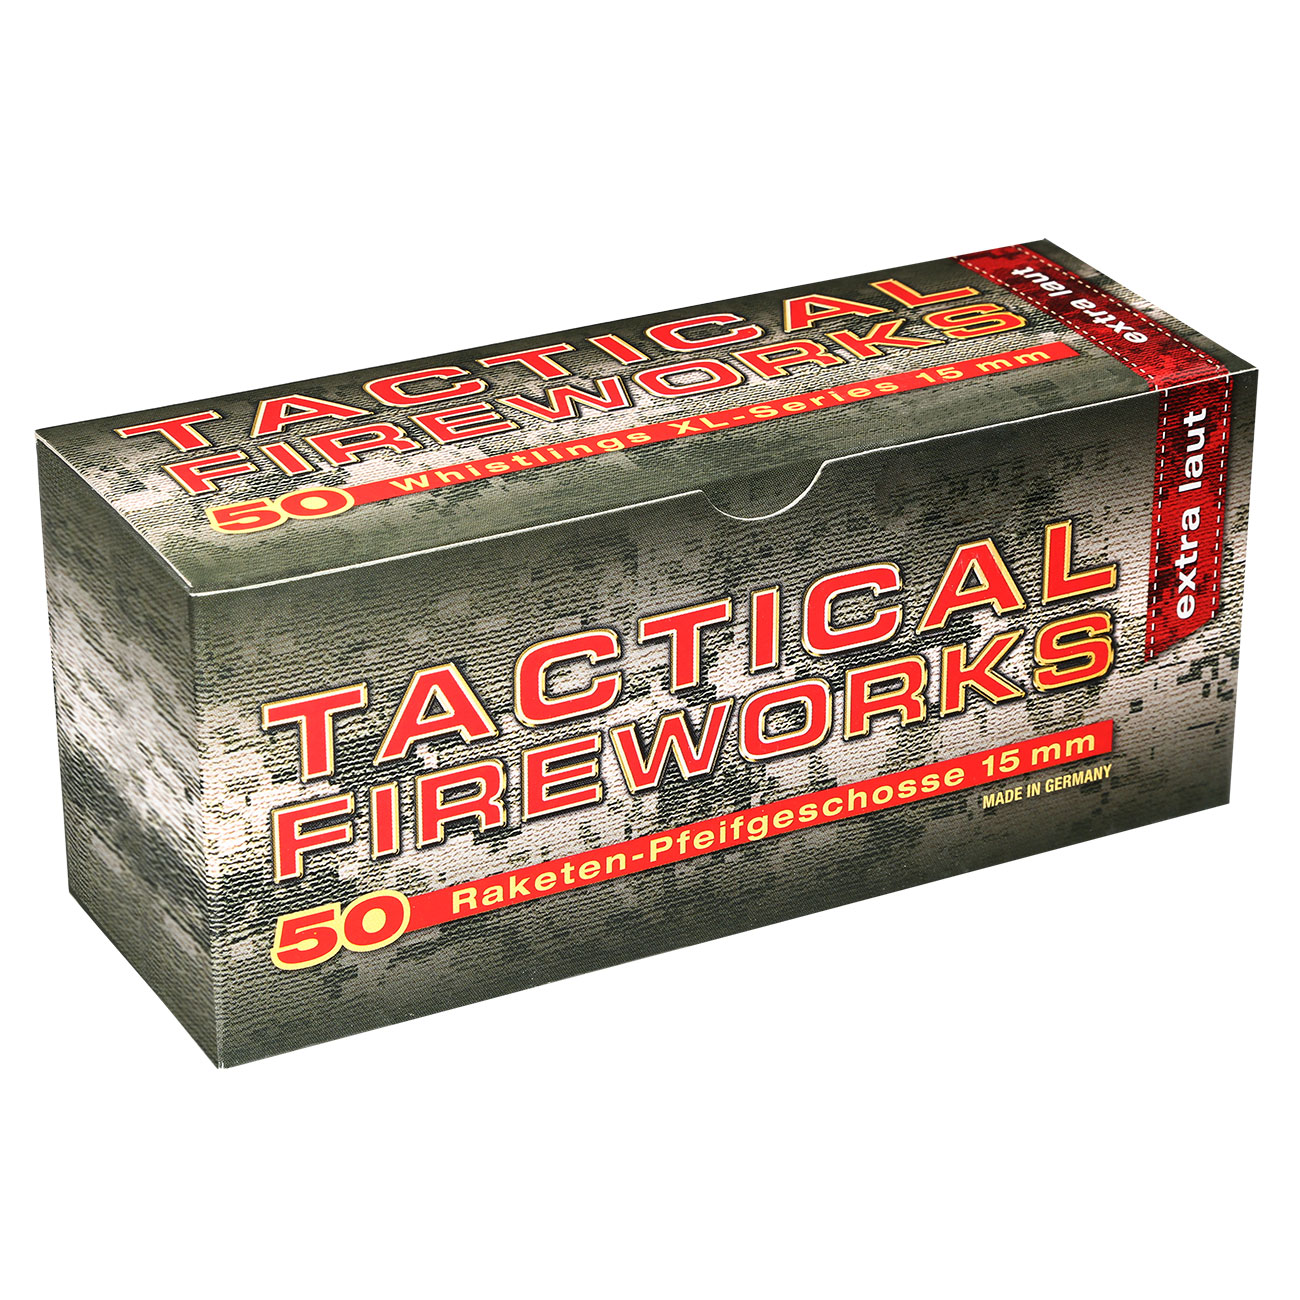 Pfeifpatronen Tactical Fireworks 50 Stück für Schreckschusswaffen Bild 1